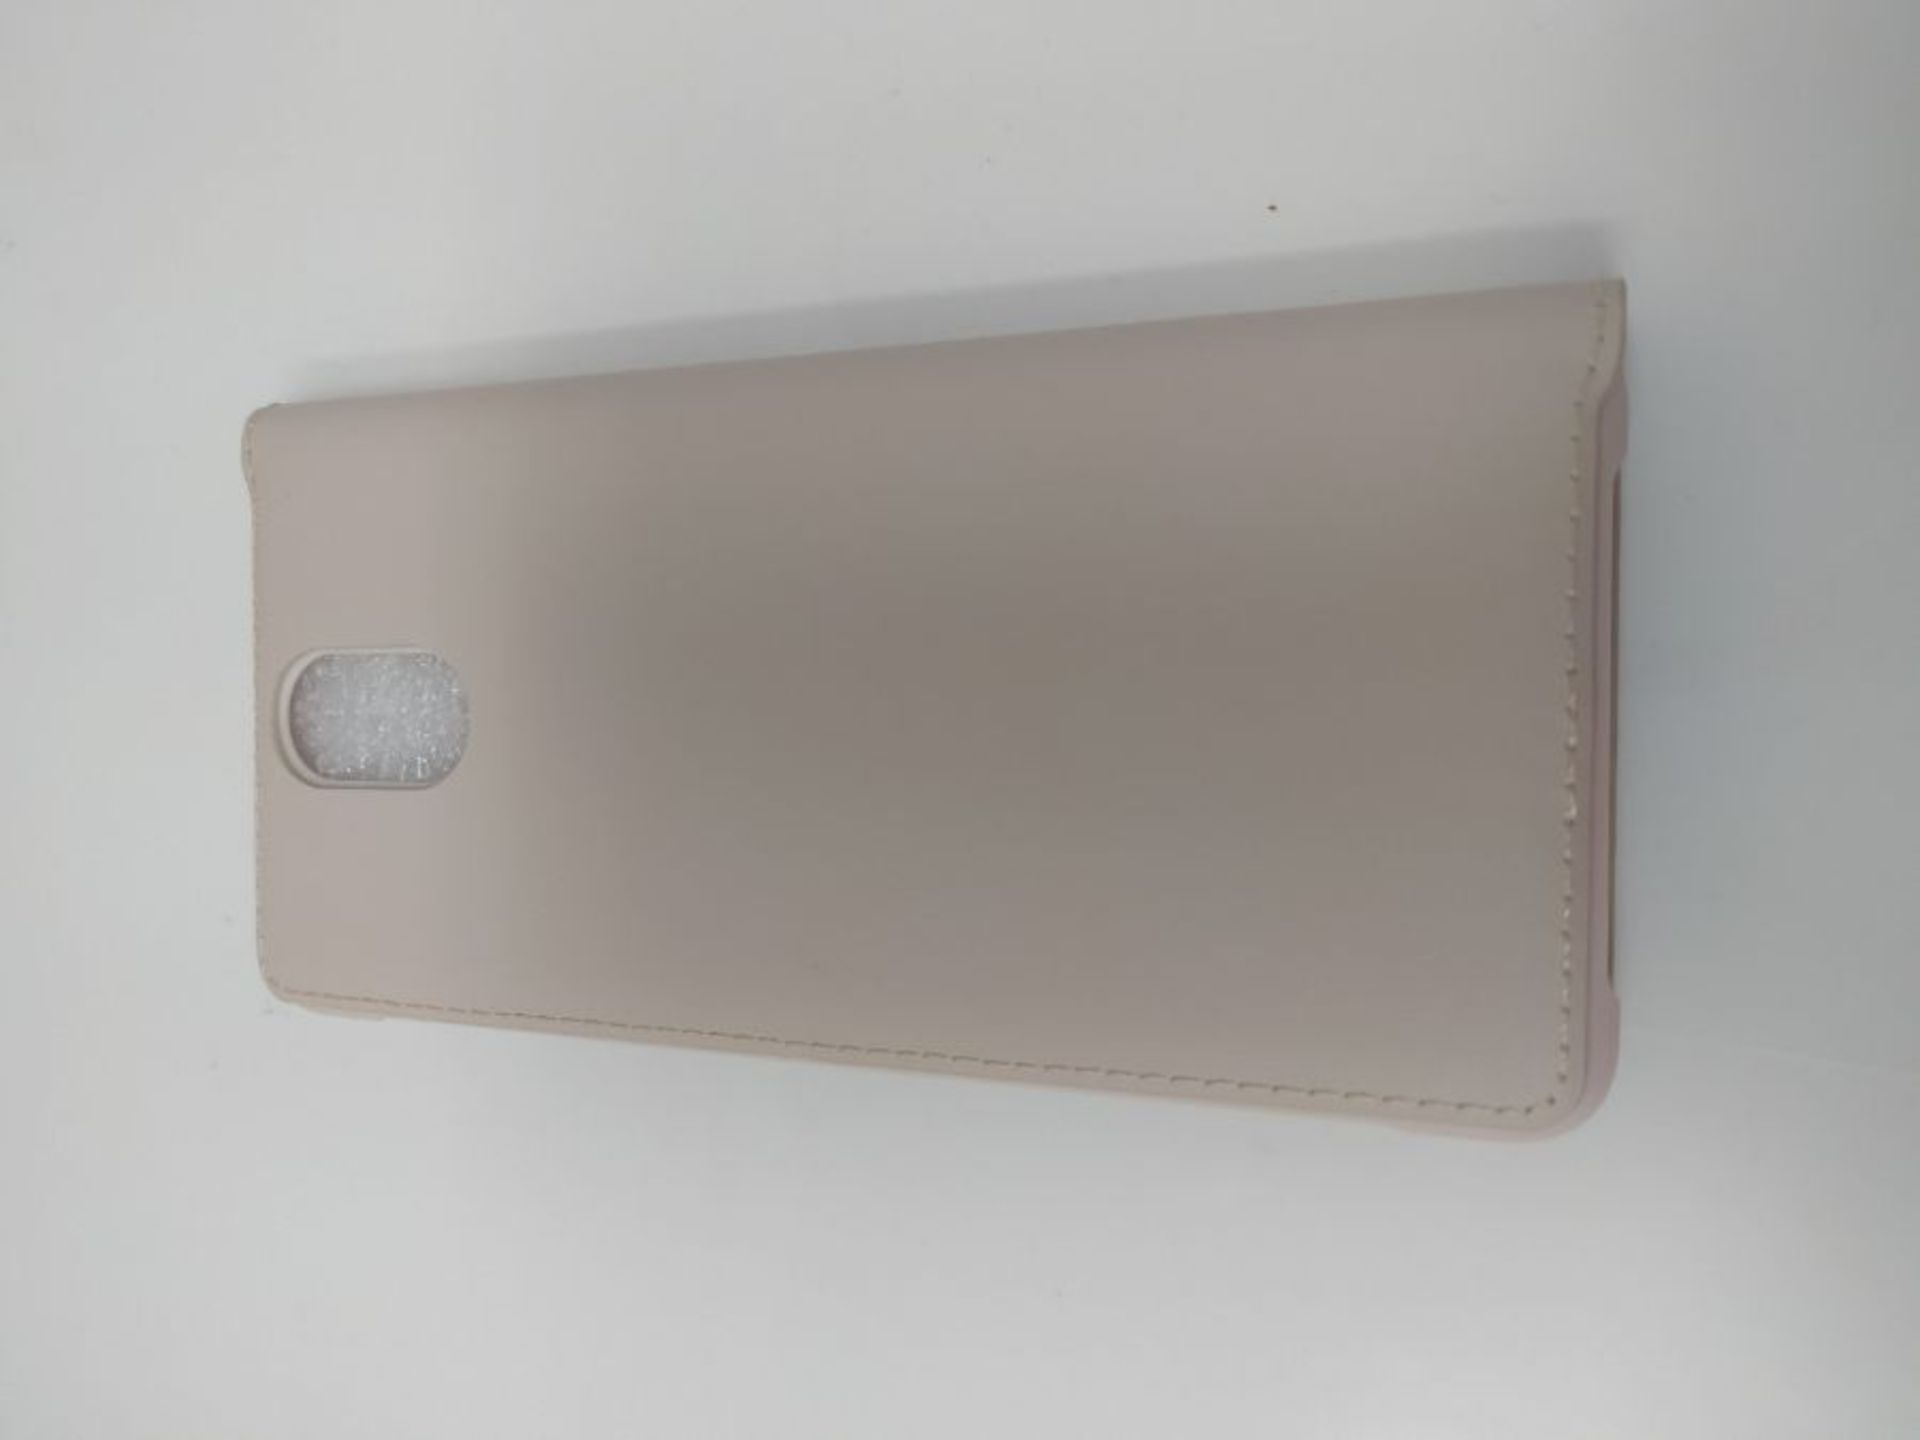 Nokia 8P00000001 Original Flip Case Cover Skin For 3.1 Cream - Image 2 of 2